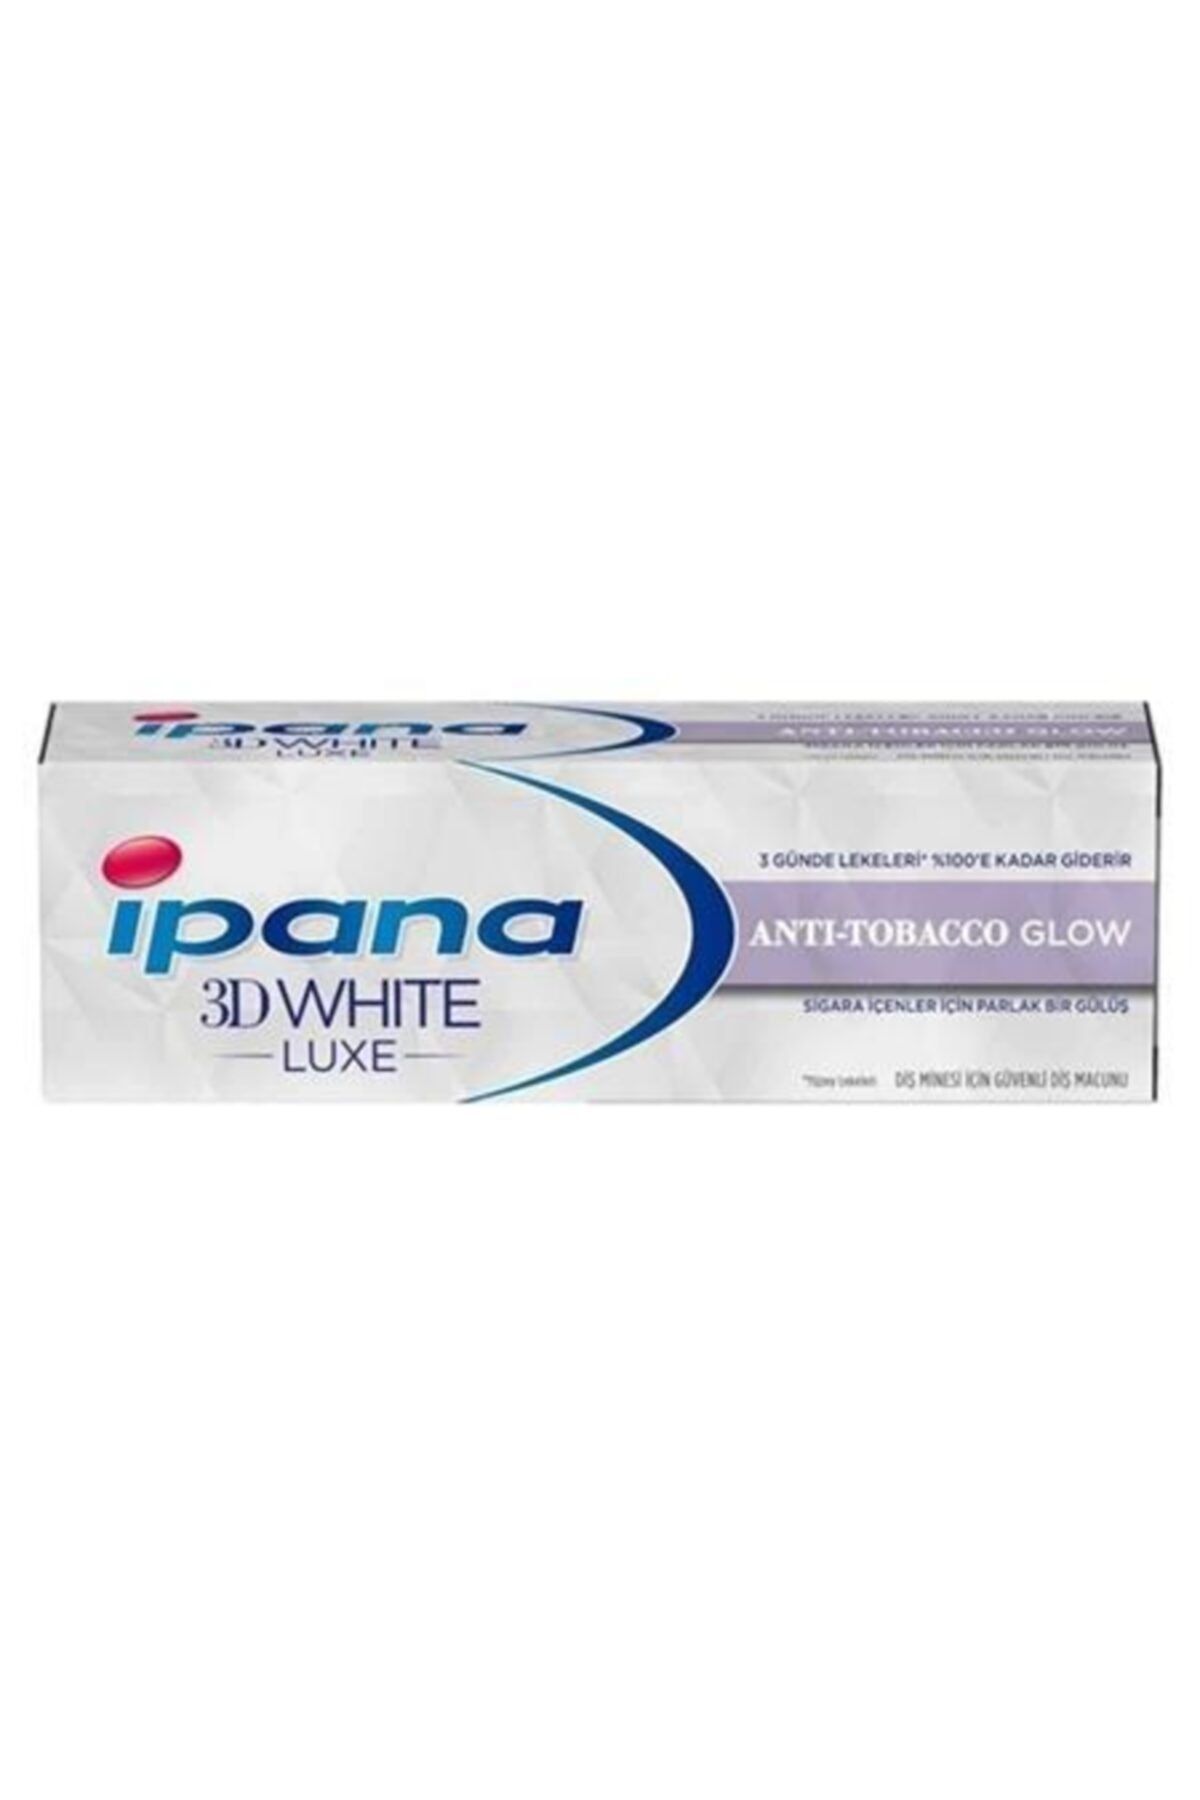 İpana Ipana 3 Boyutlu Beyazlık Luxe Diş Macunu Anti Tobacco Glow Sigara Içenler Için 75 Ml